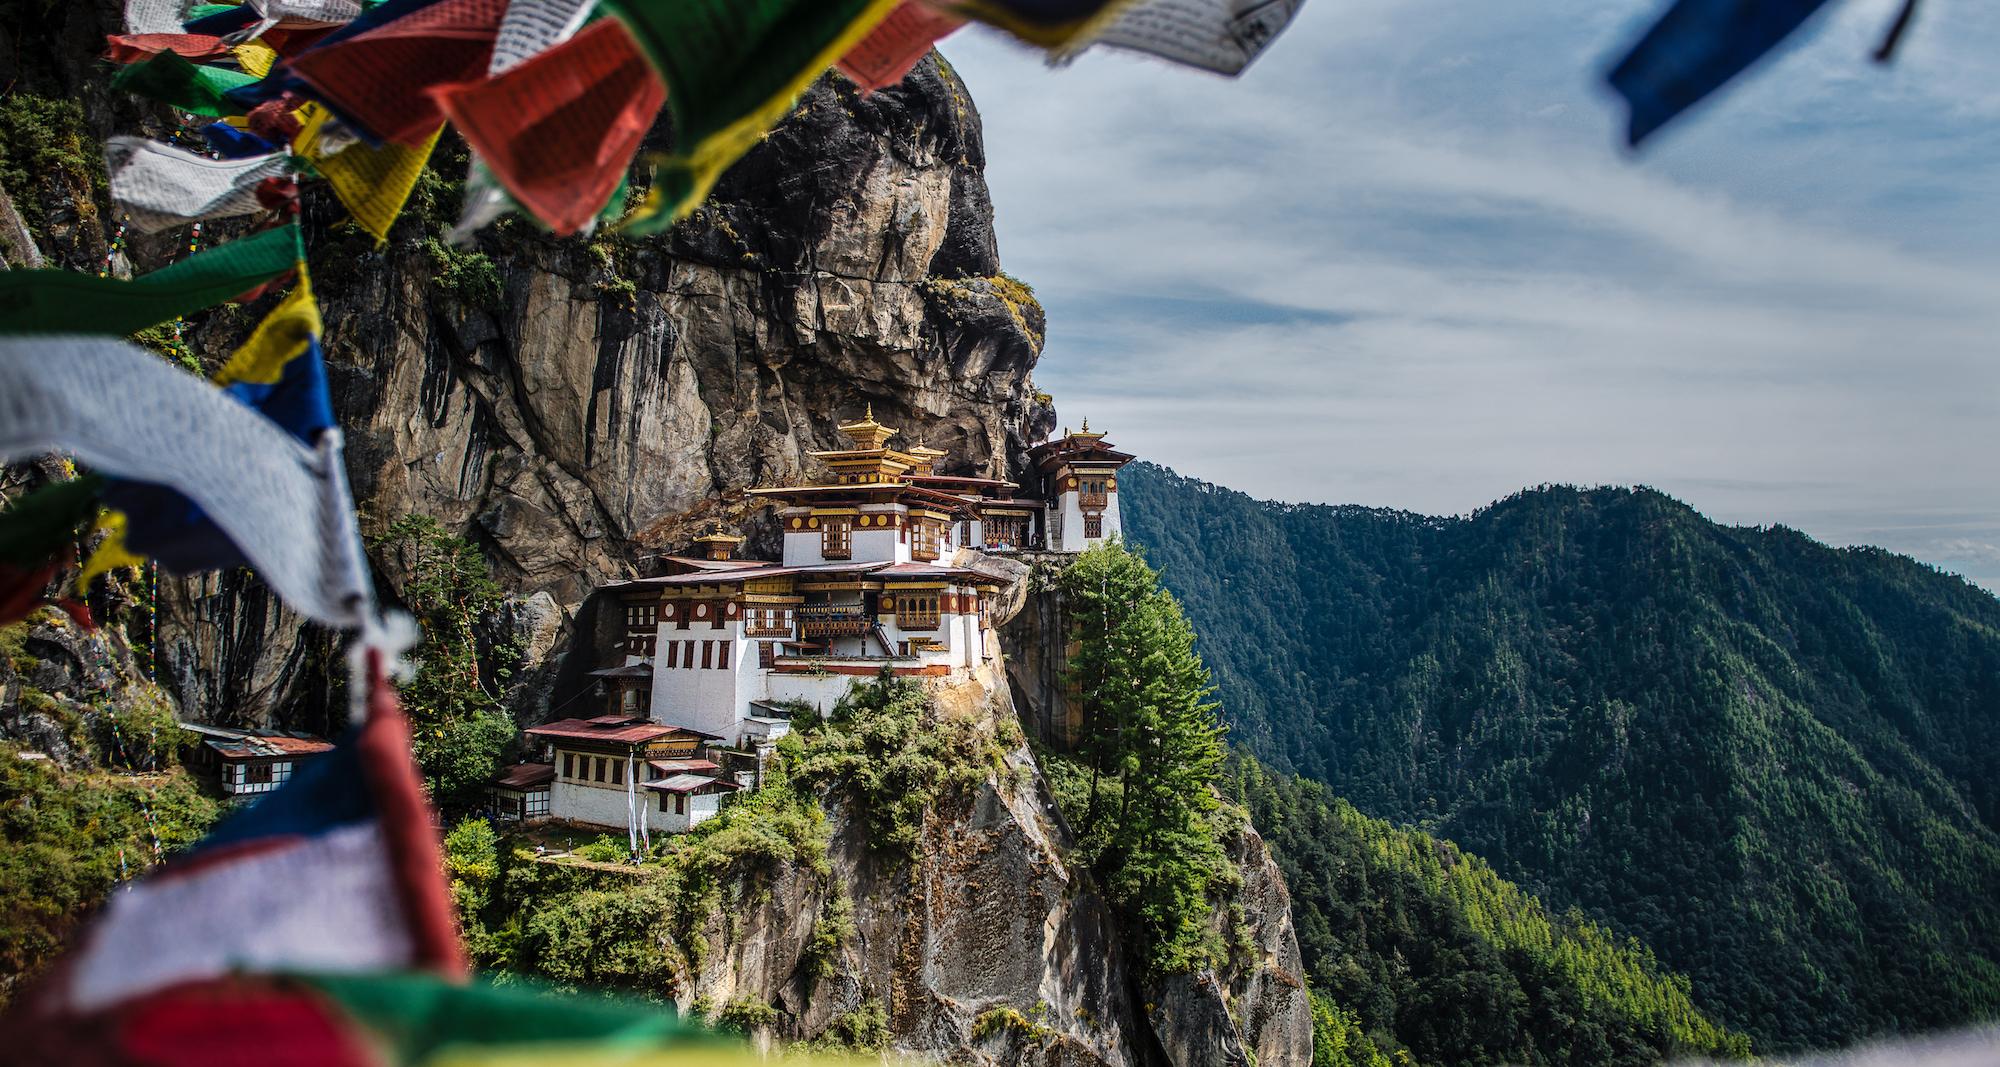 坐落在 paro 山谷悬崖中的虎穴寺是不丹最神圣的佛教圣寺,也是世界